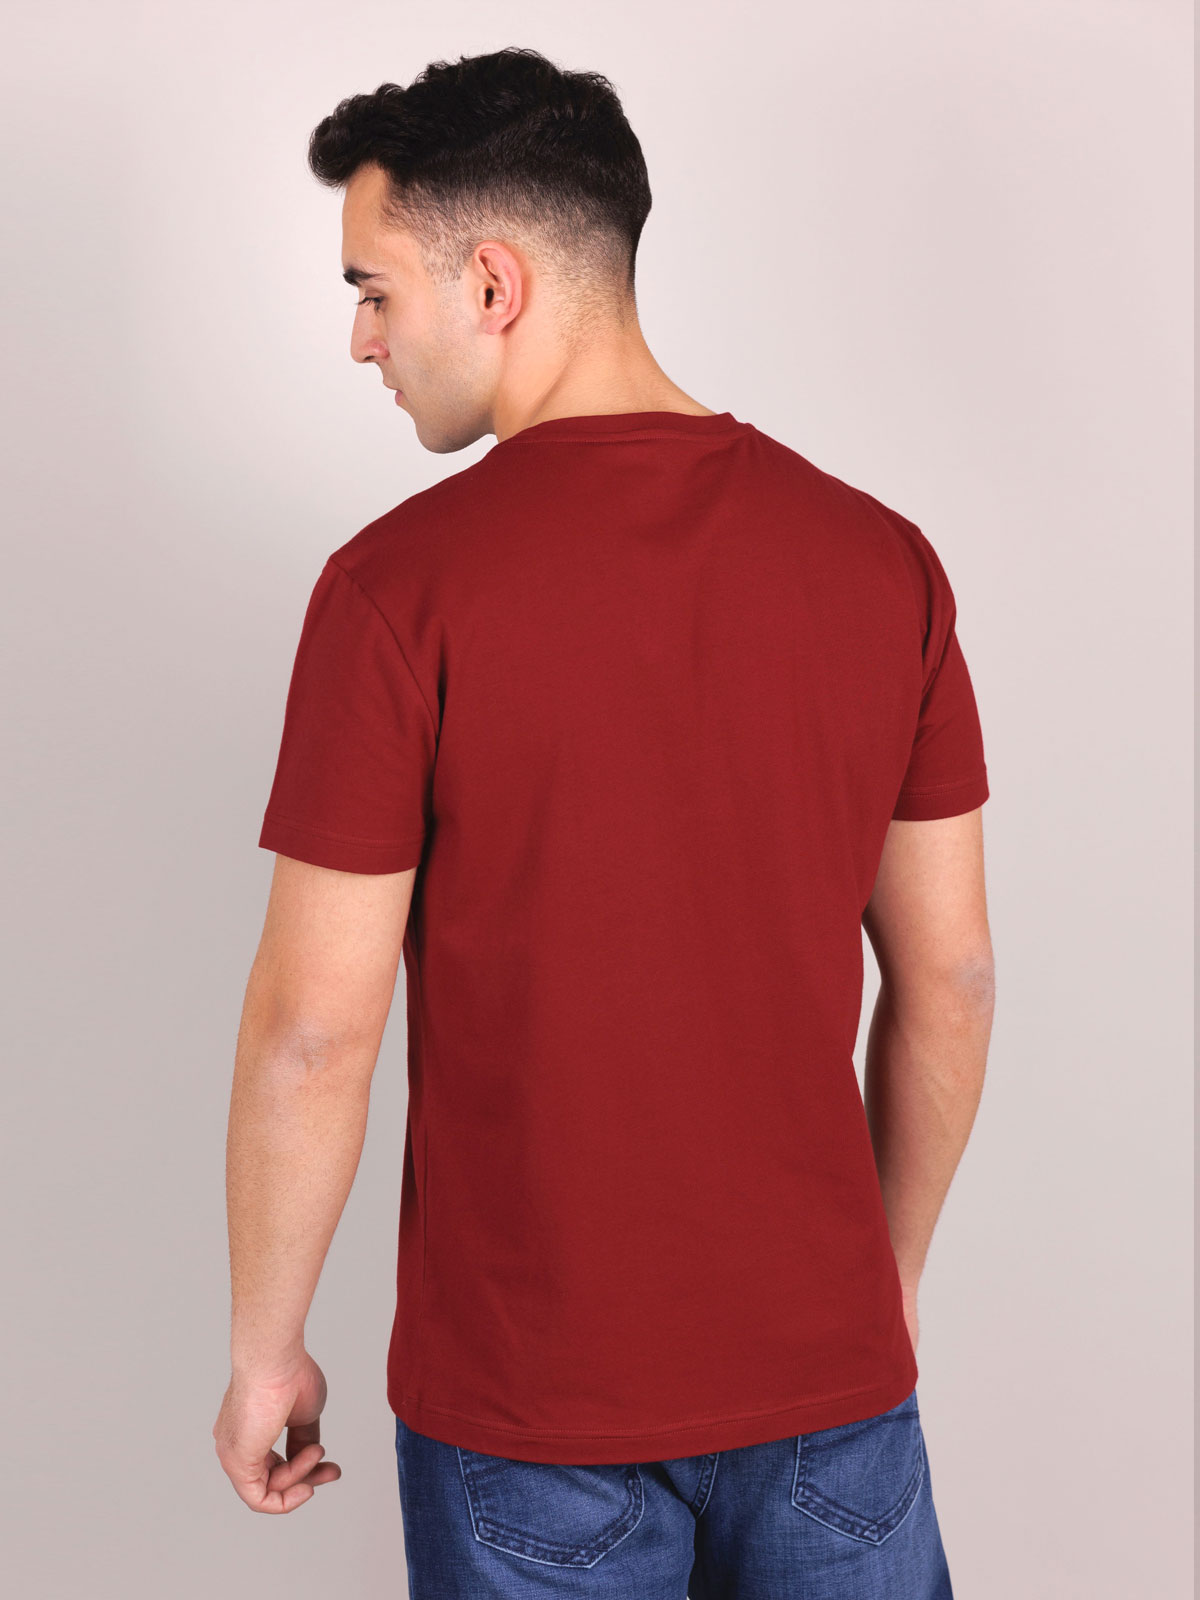 Μπλουζάκι σε μπορντό χρώμα με στάμπα - 96460 € 23.62 img2